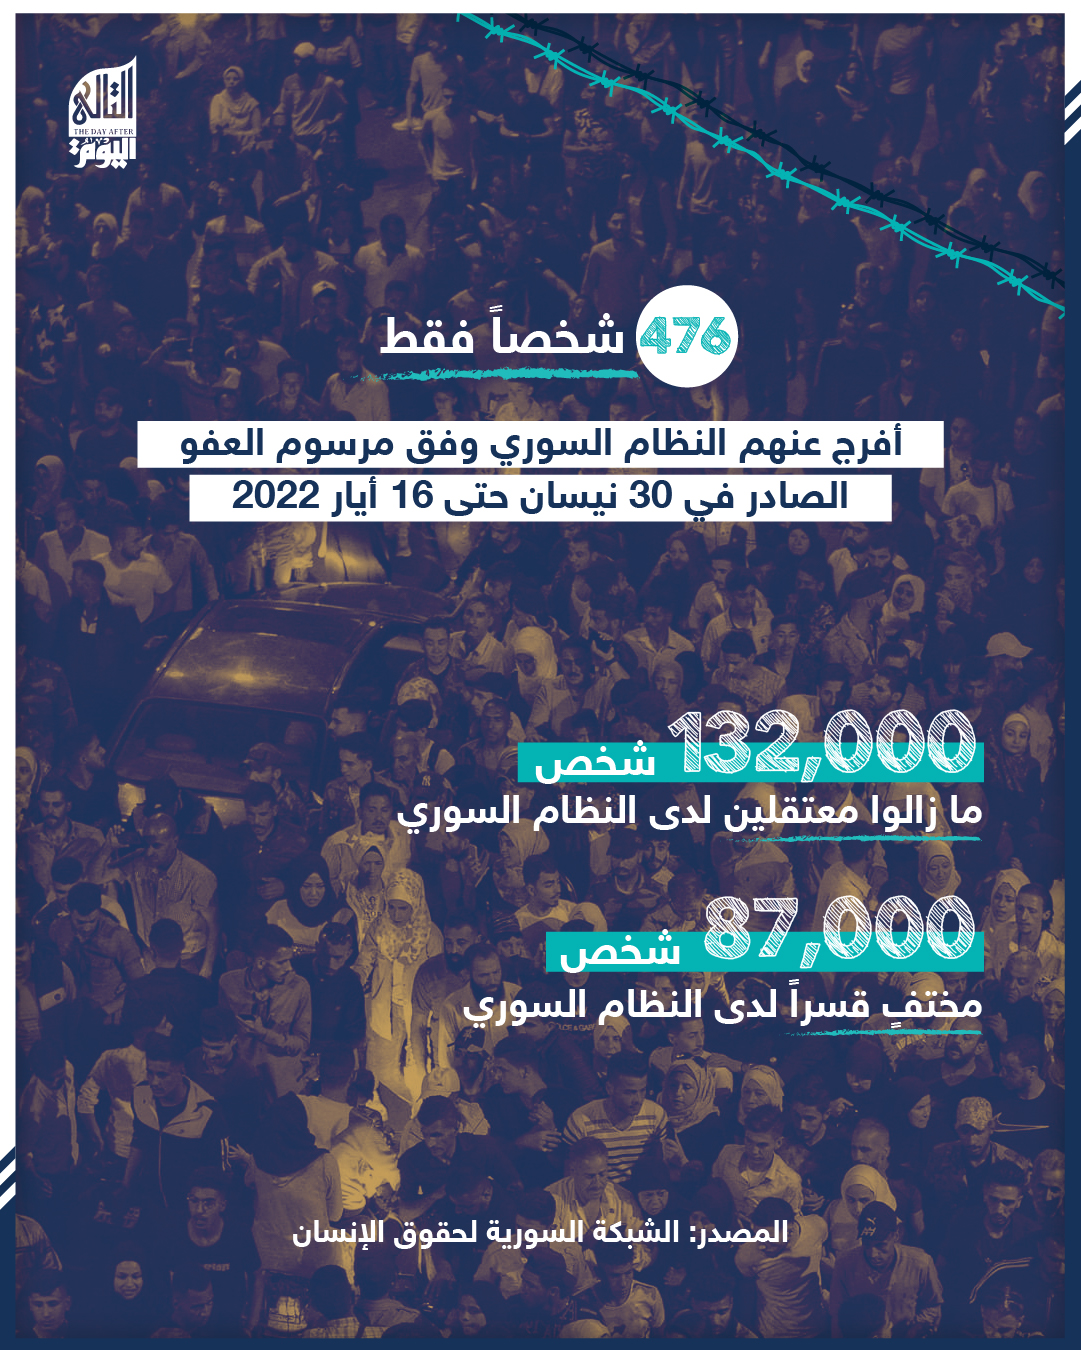 أكثر من 132 ألف شخص ما زالوا معتقلين لدى النظام السوري